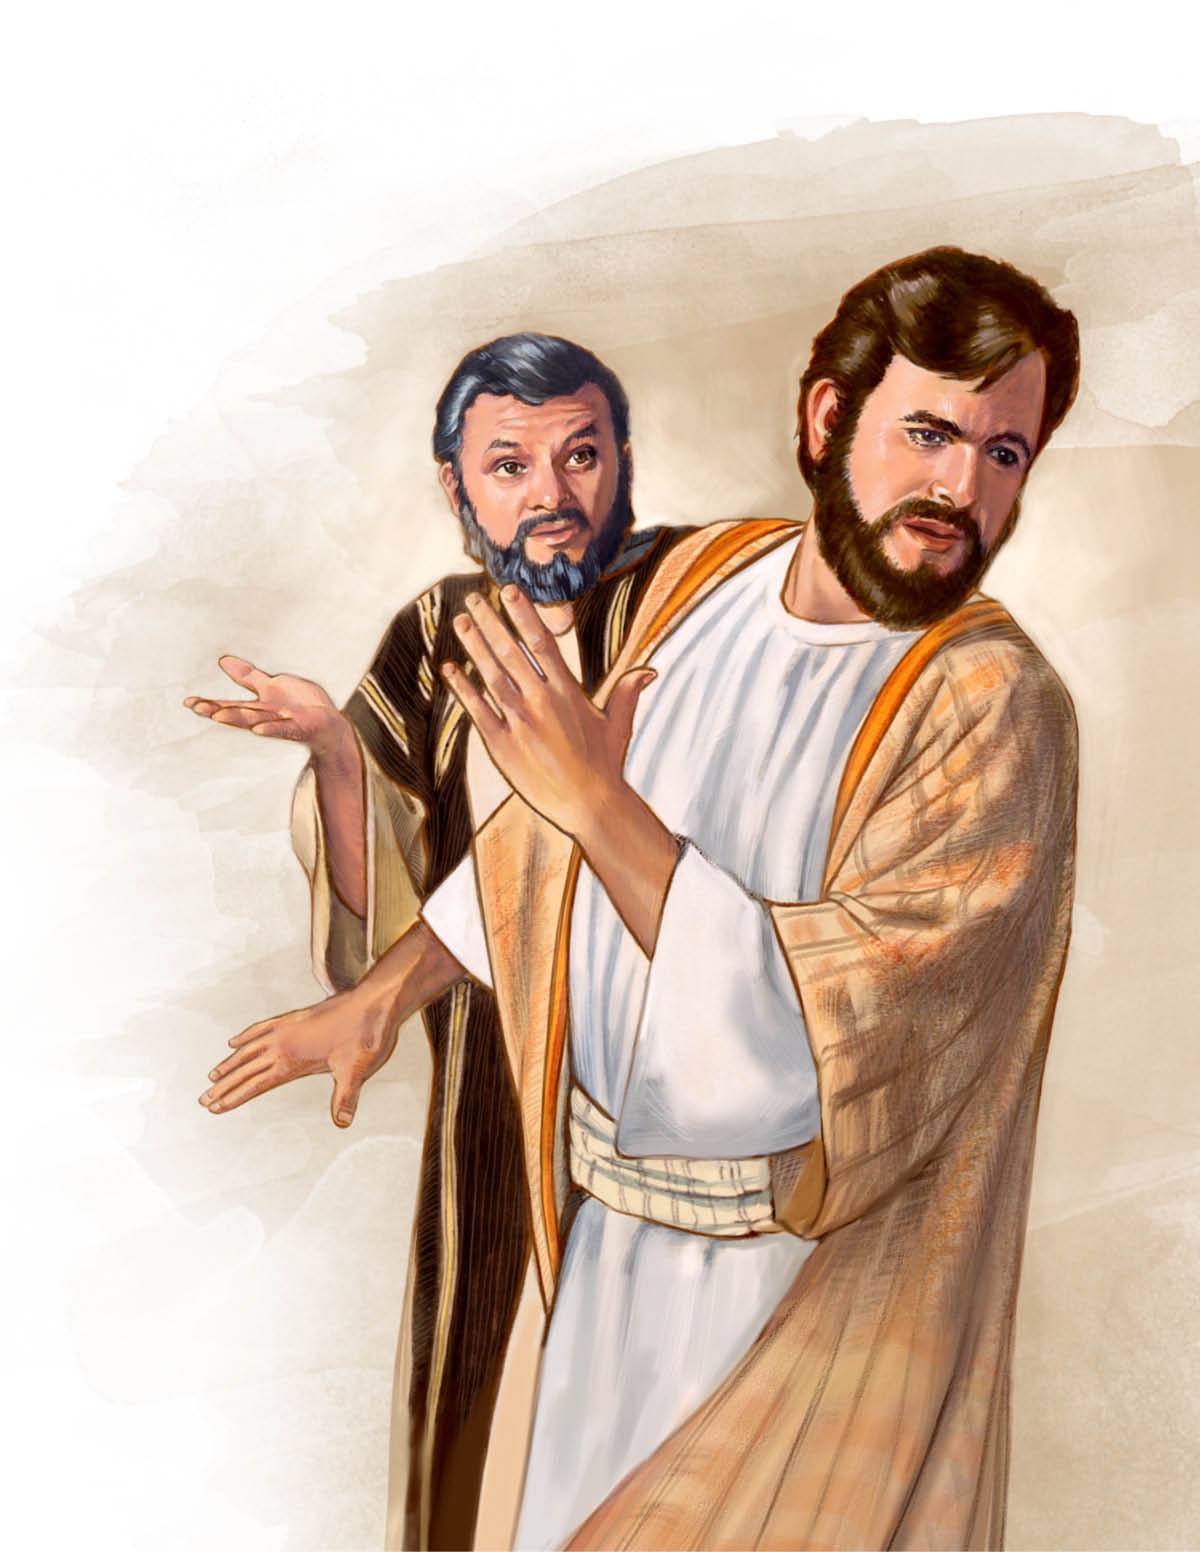 Jesus tells Peter to get behind him